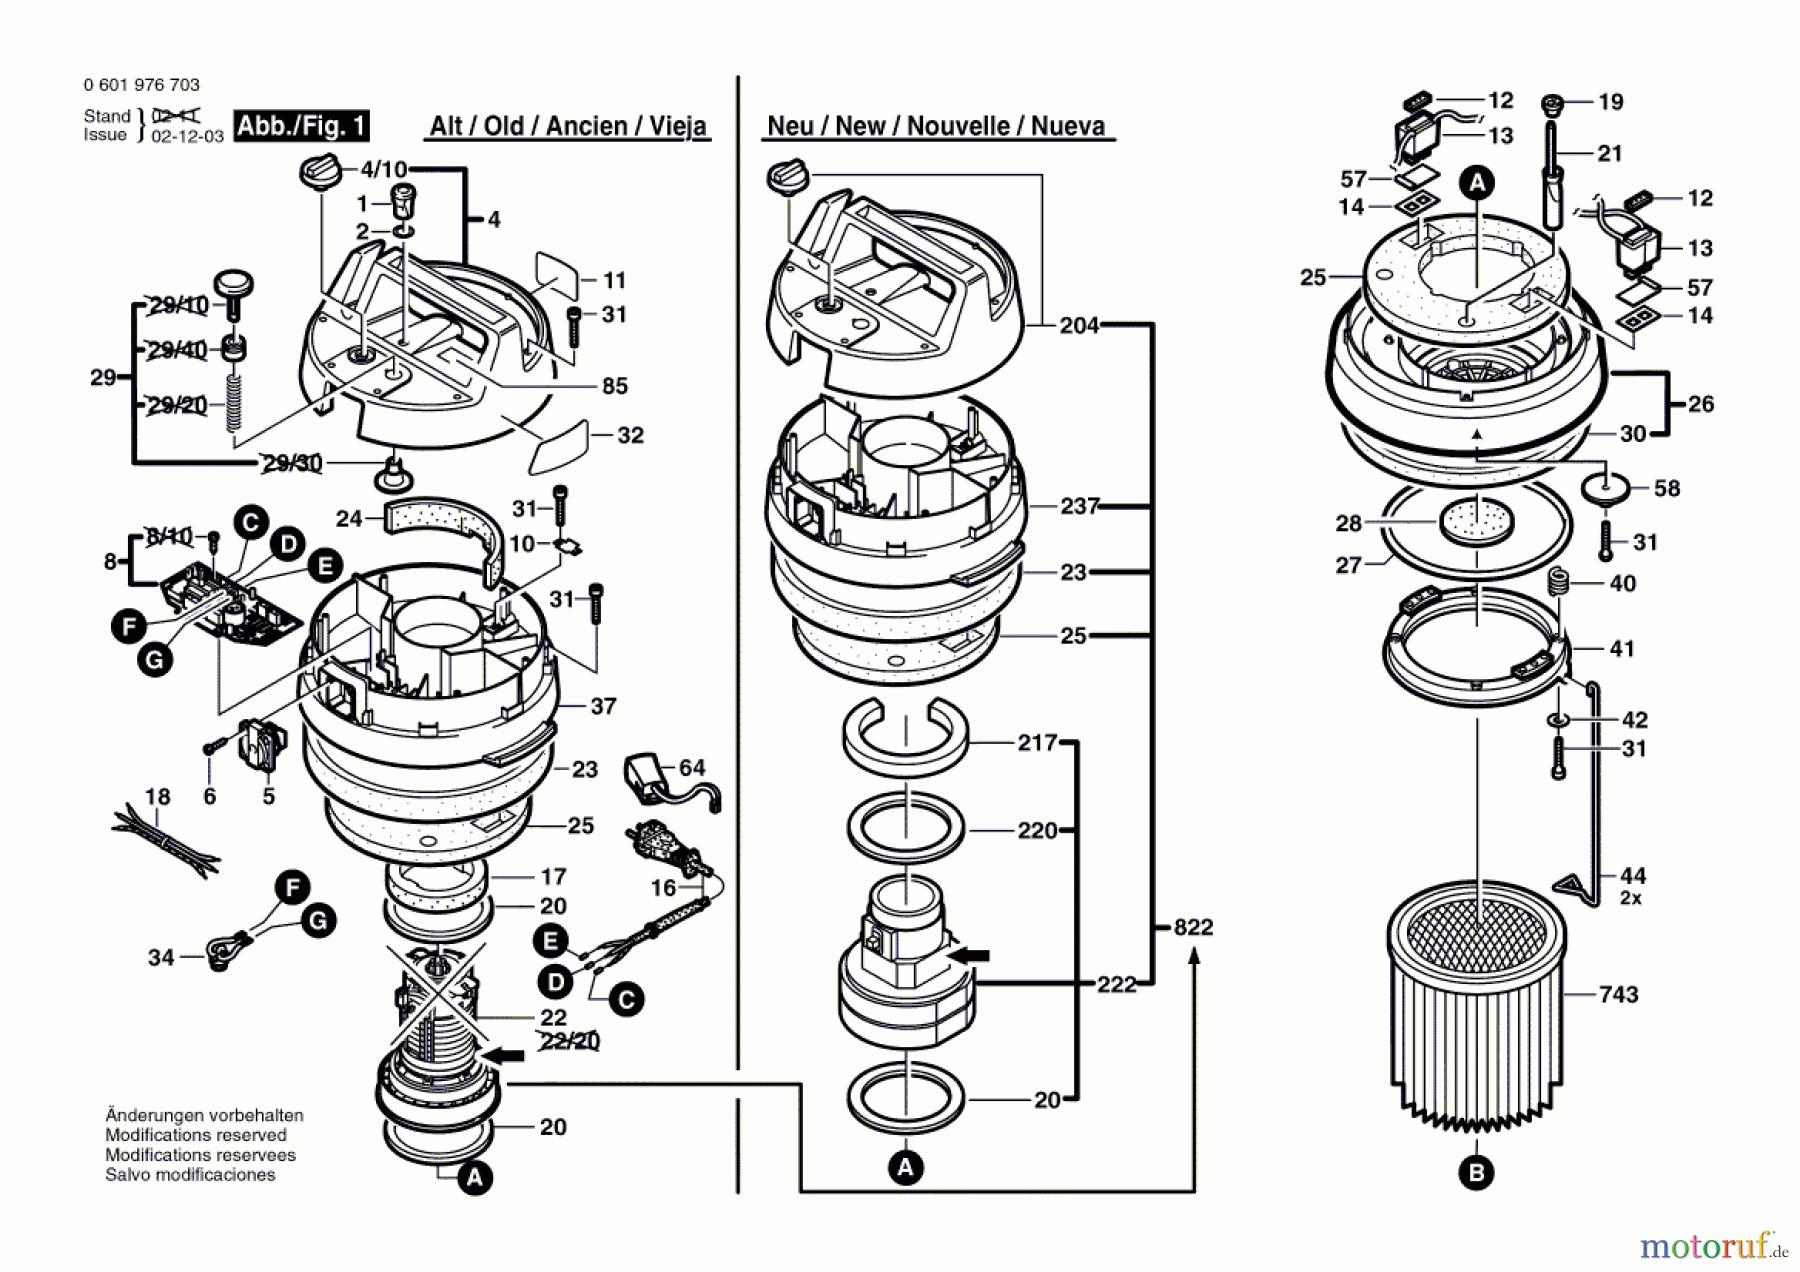  Bosch Werkzeug Allzwecksauger GAS 14-20 RFB Seite 1